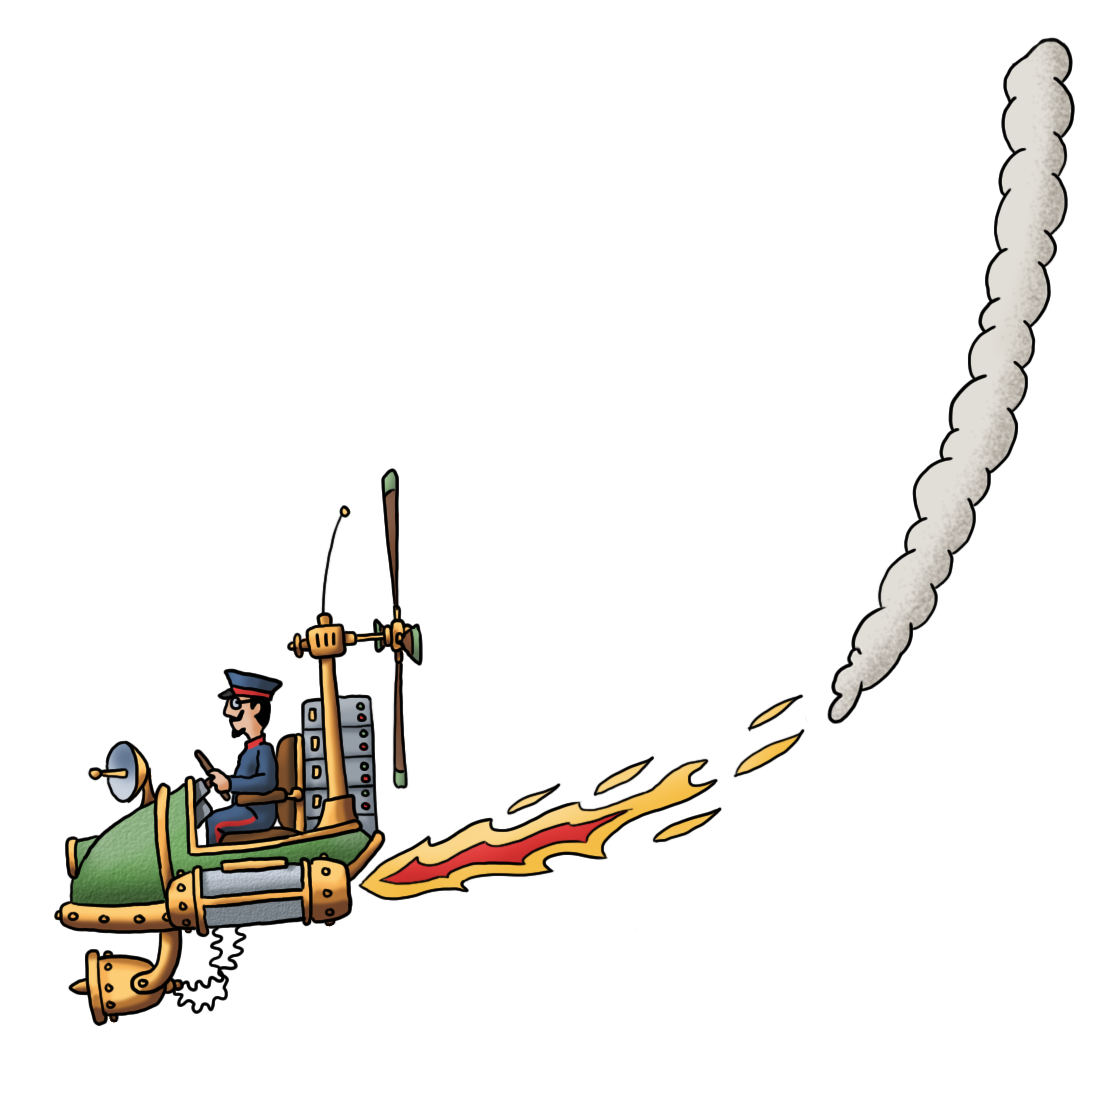 Der Flieger des Flying Circus zeigt ein düsengetriebenes Fluggerät im Steampunk-Stil welches von rechts nach links fliegt